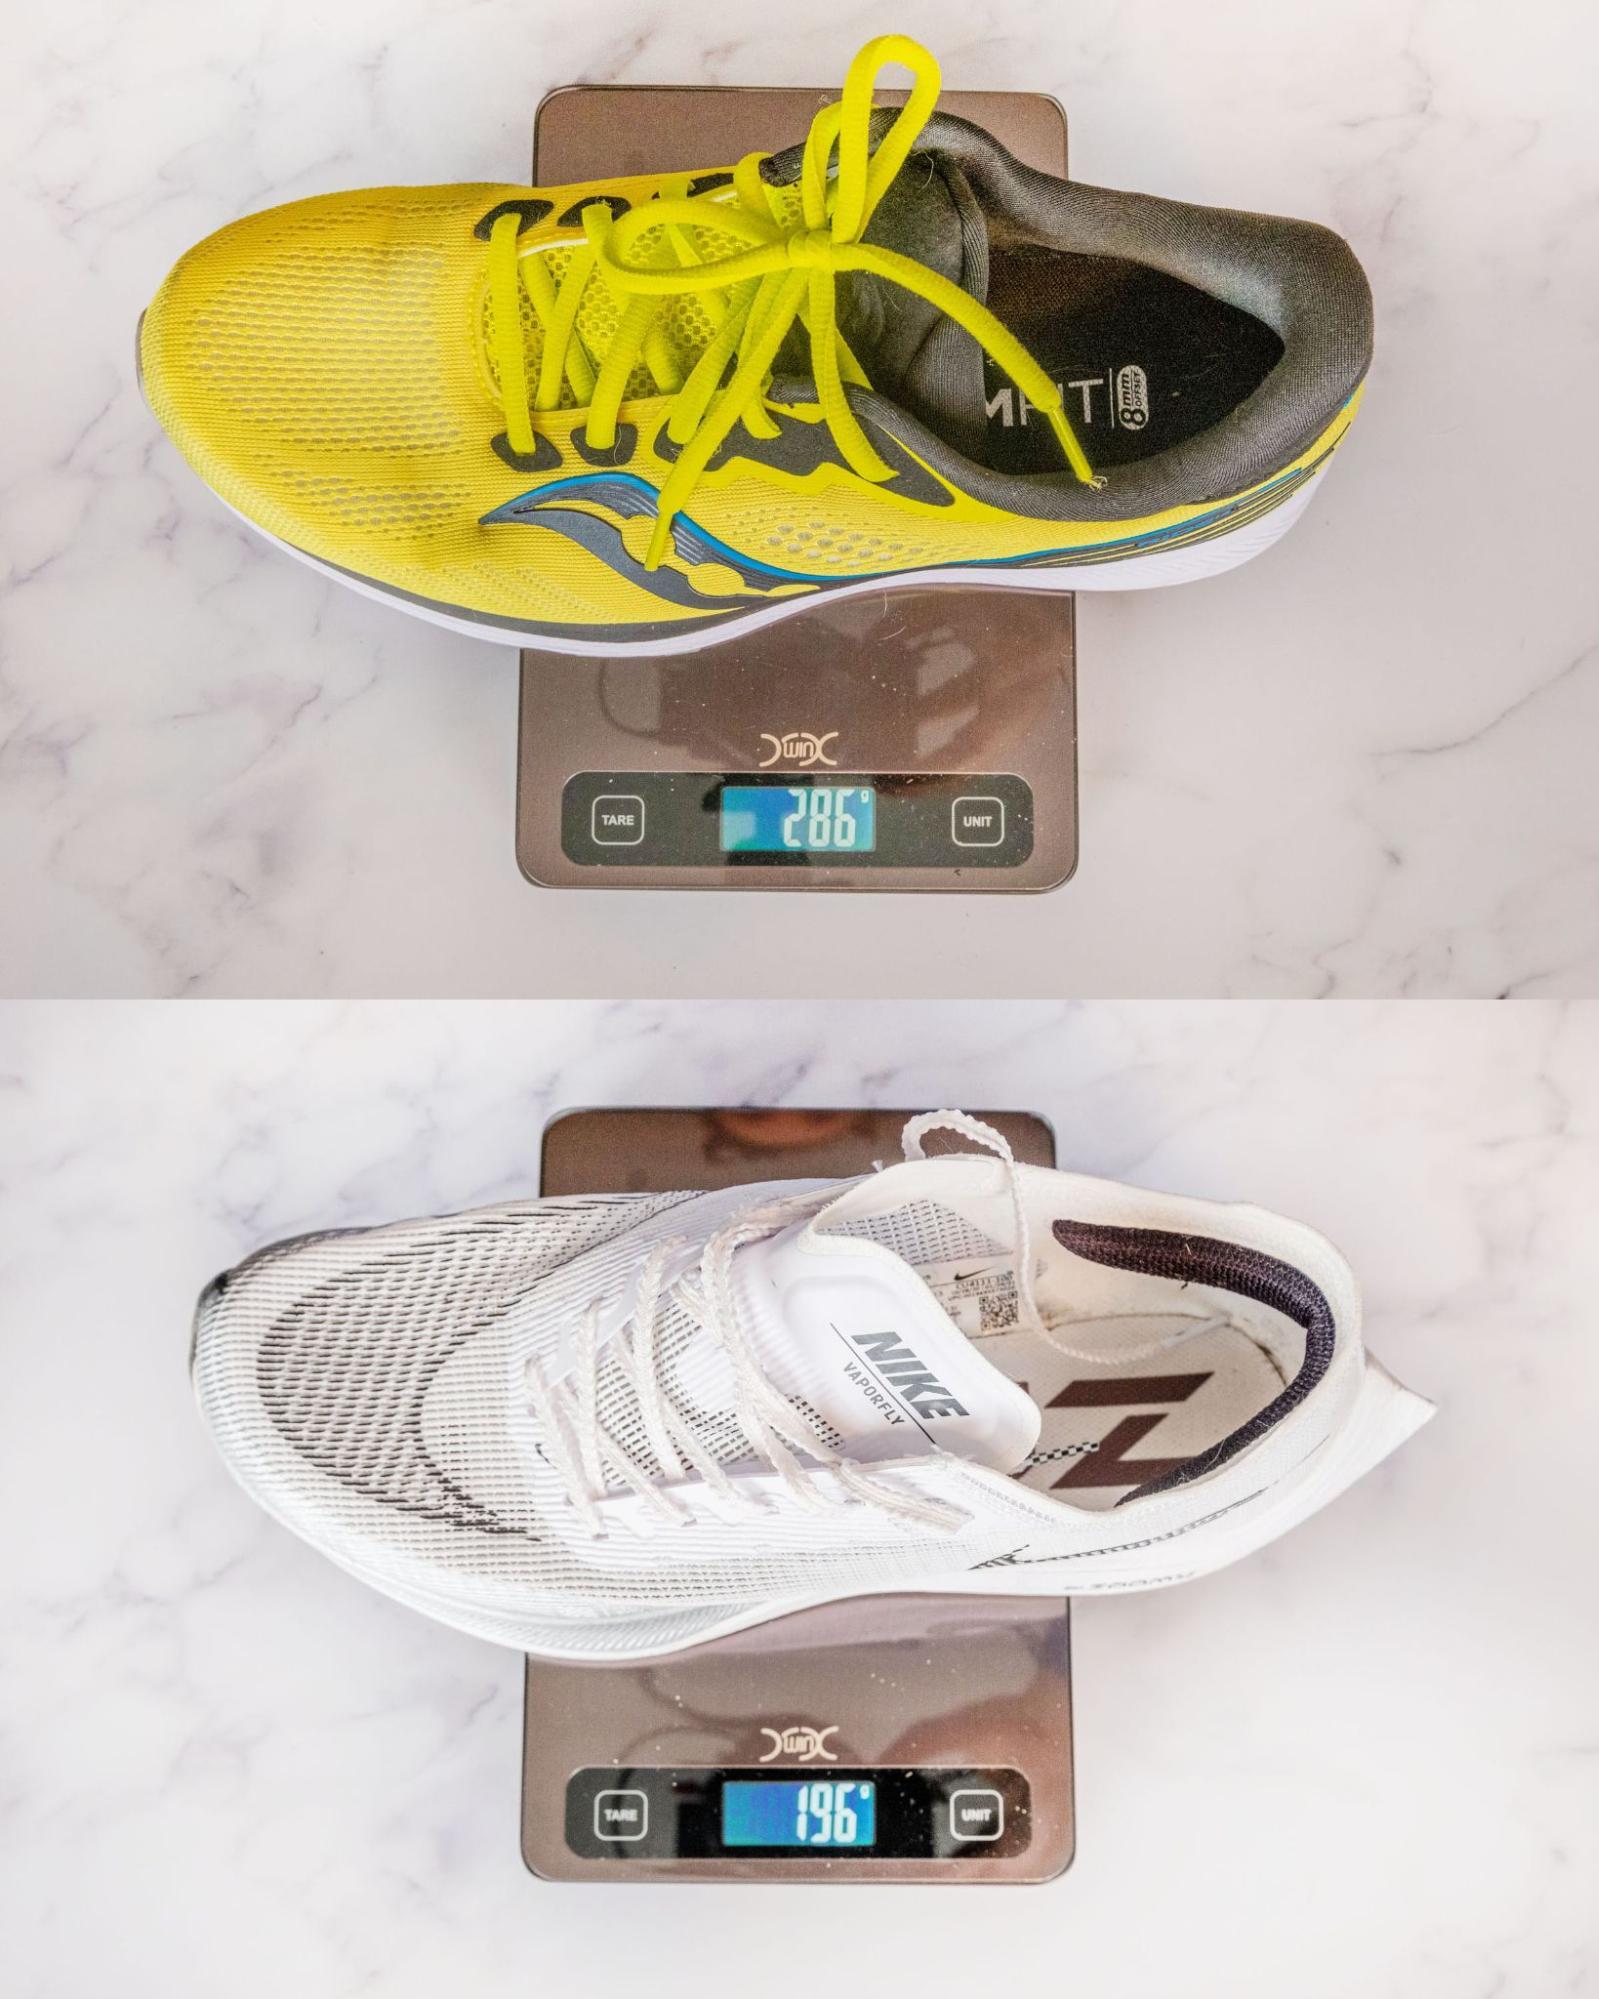 Running Shoe Weight & Performance [Calculator] | RunRepeat